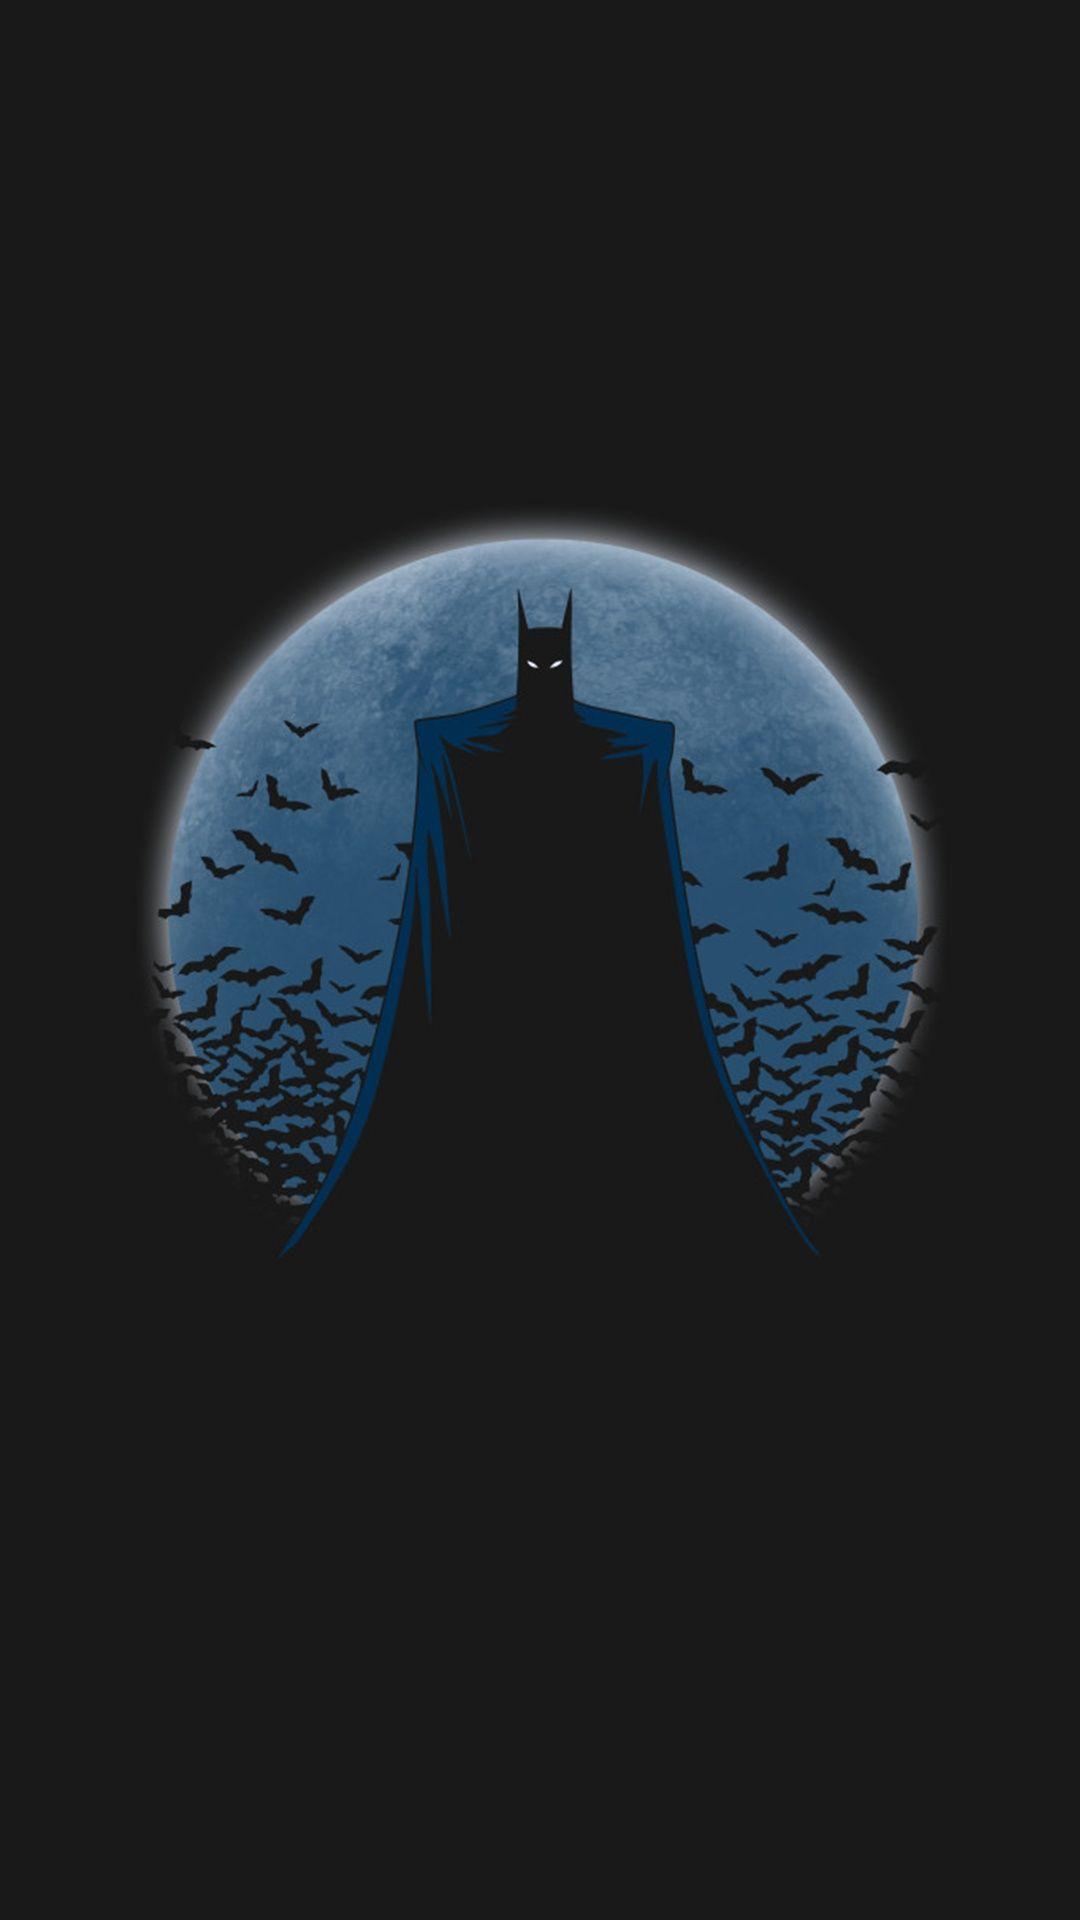 The Batman wallpaper [3459x7496] : r/Amoledbackgrounds